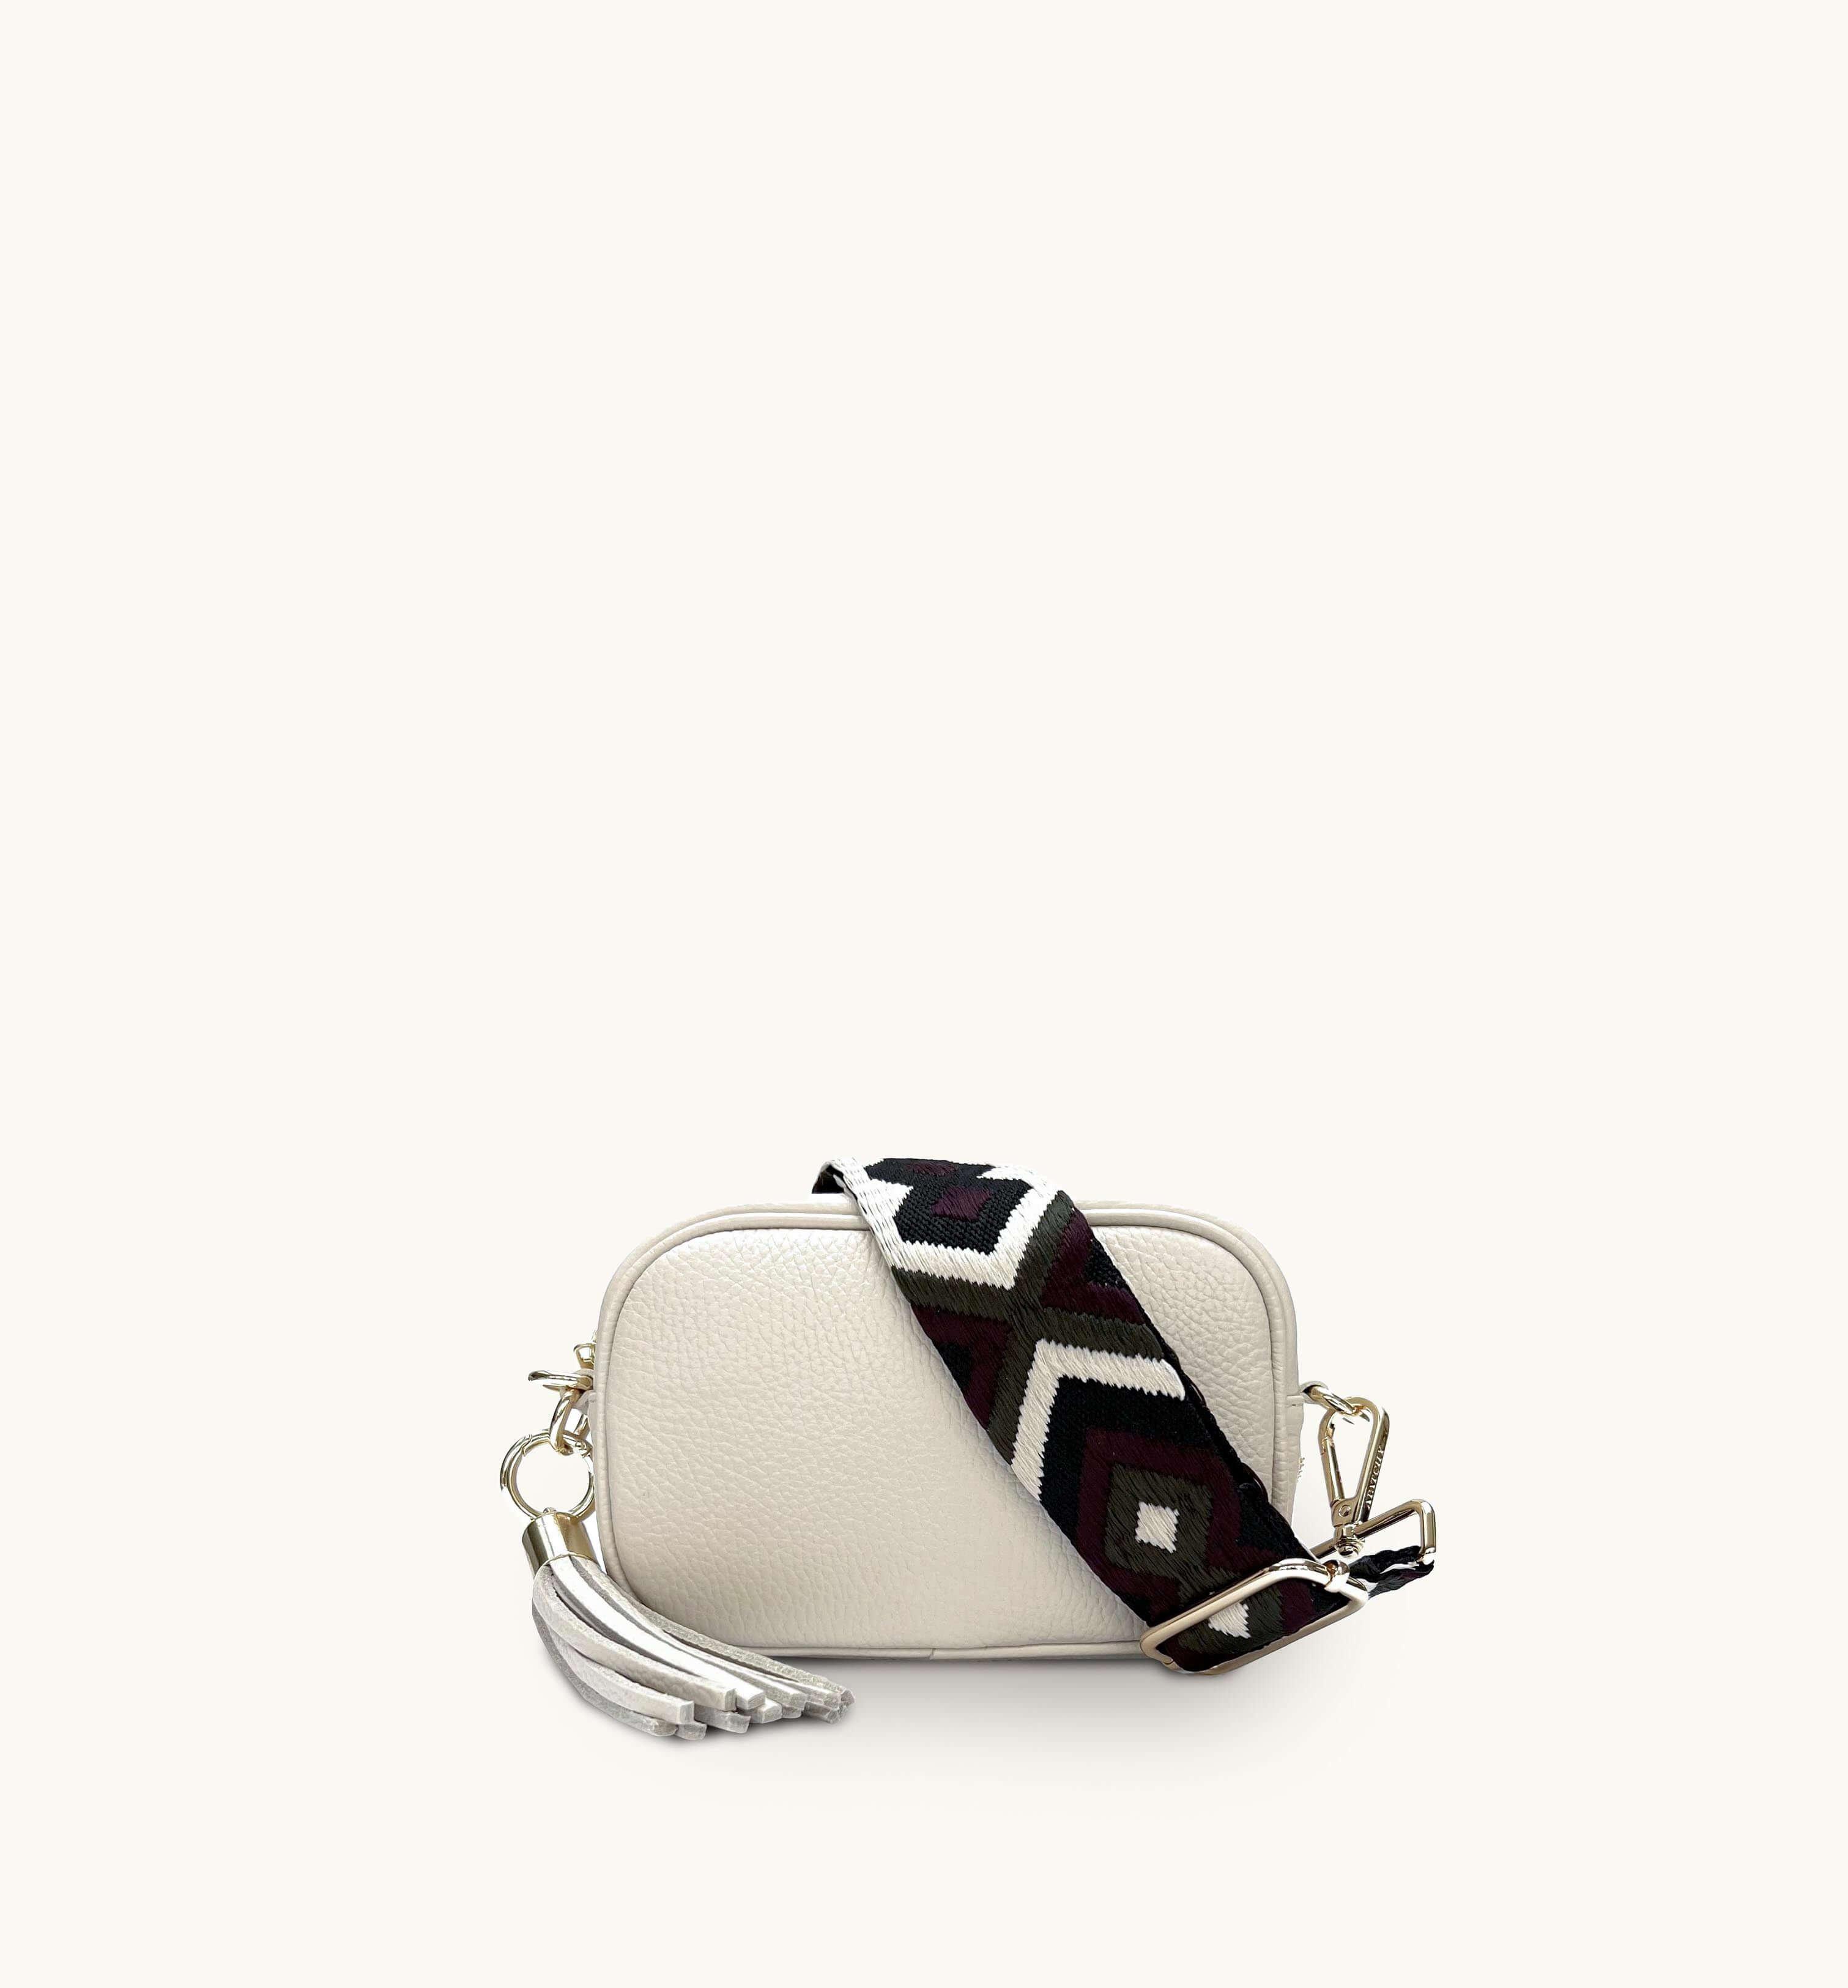 Кожаная сумка для телефона Mini с кисточками и оливковым ремешком с бриллиантами Apatchy London, бежевый цена и фото